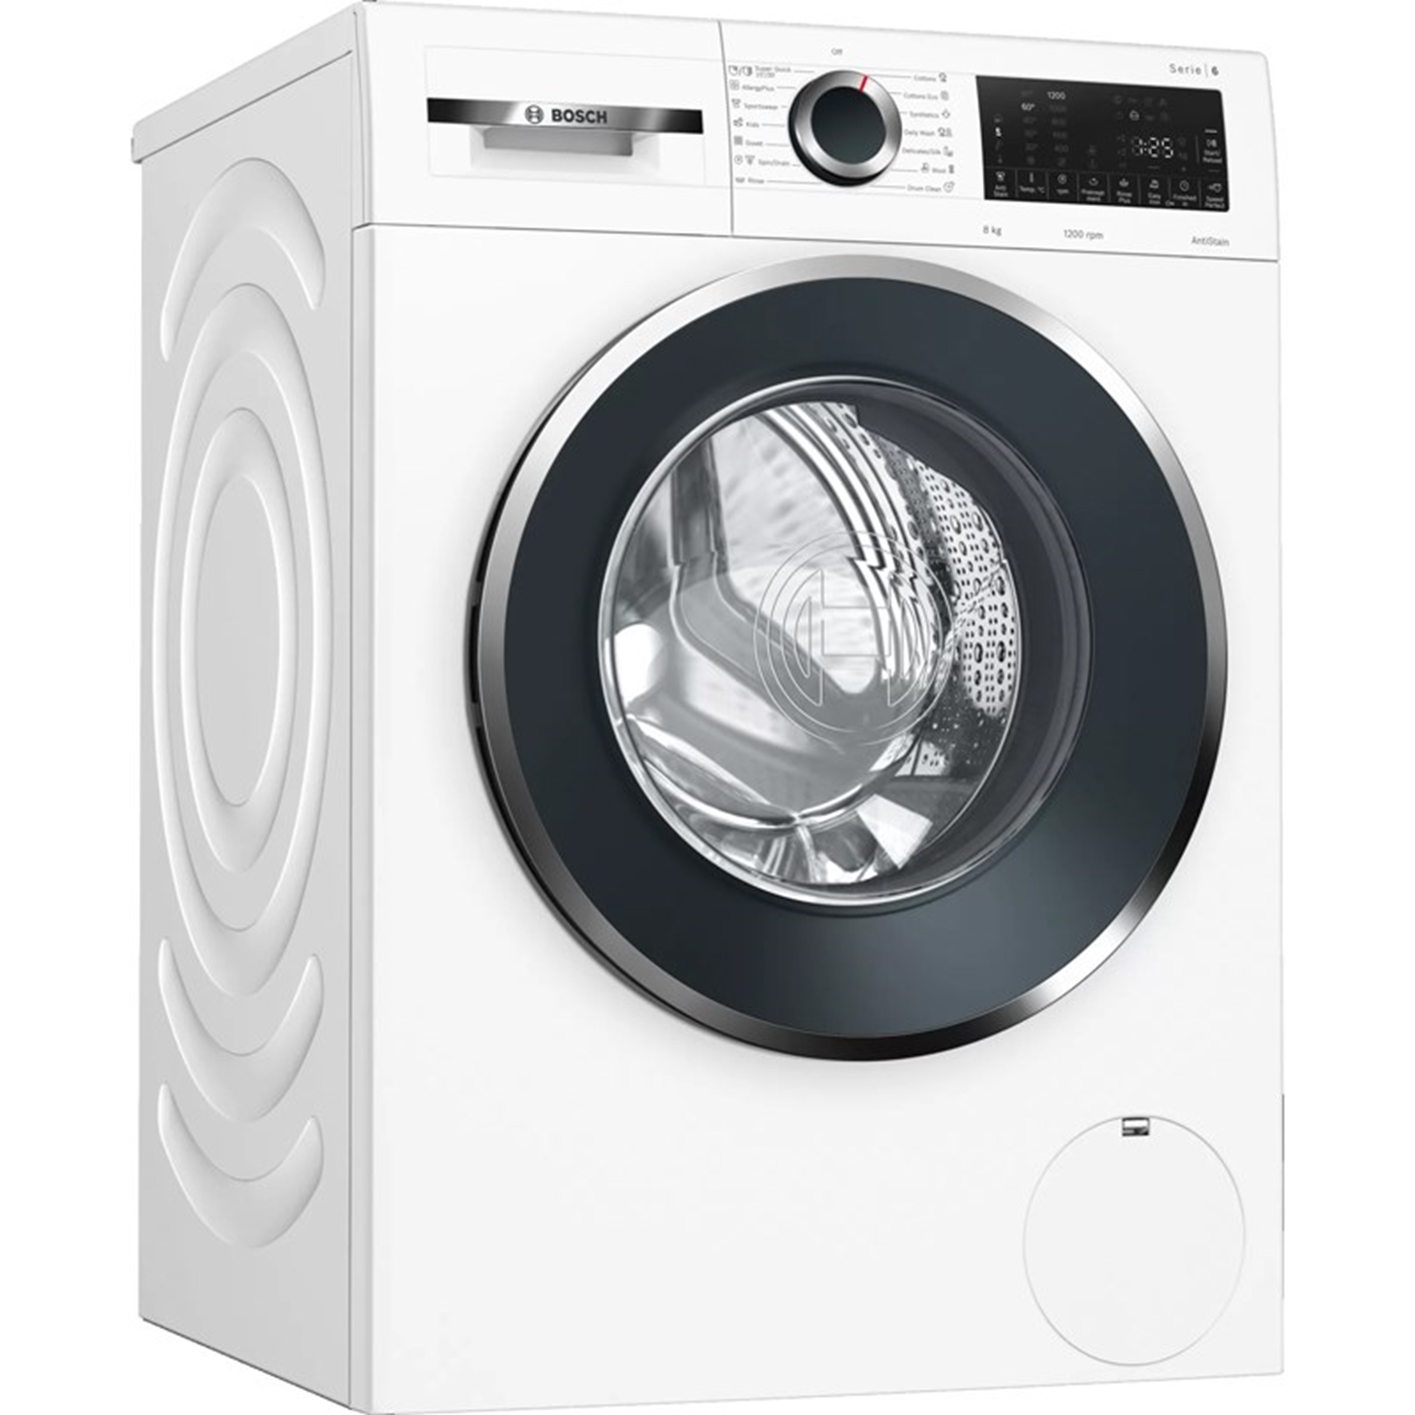 Hình ảnh của Máy giặt Bosch WGG234E0SG